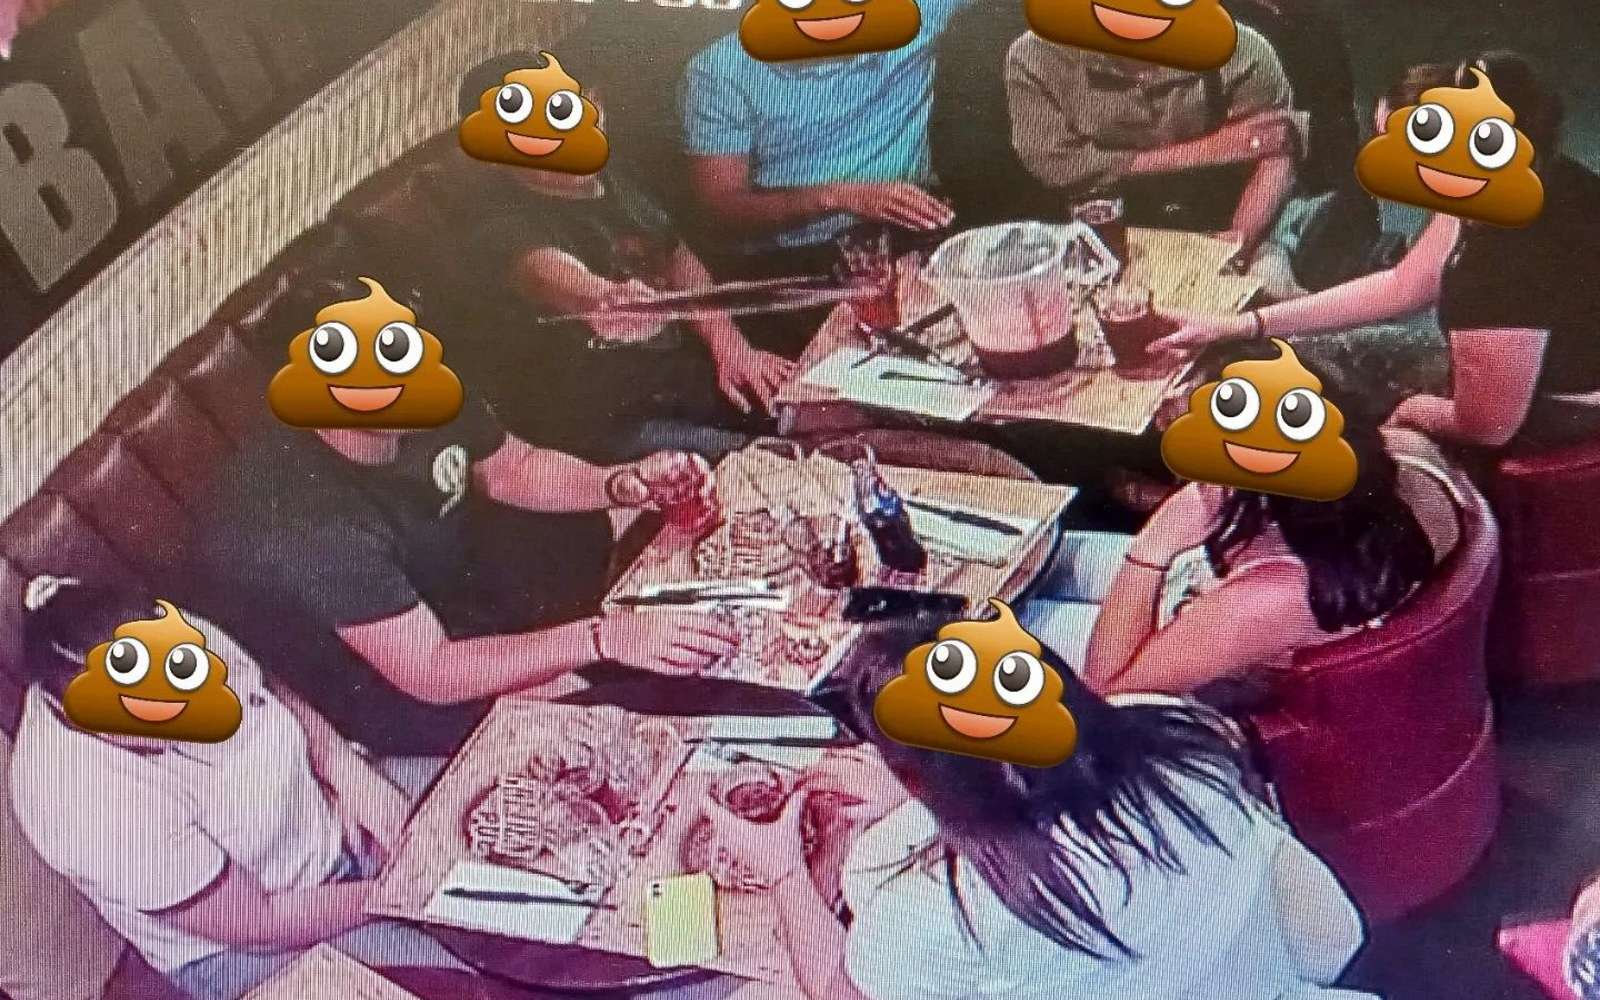 Un restaurateur a publié la photo d’un groupe parti sans payer l'addition dans l’espoir de les obliger à régler leur note. © Le Golden Pub, Facebook